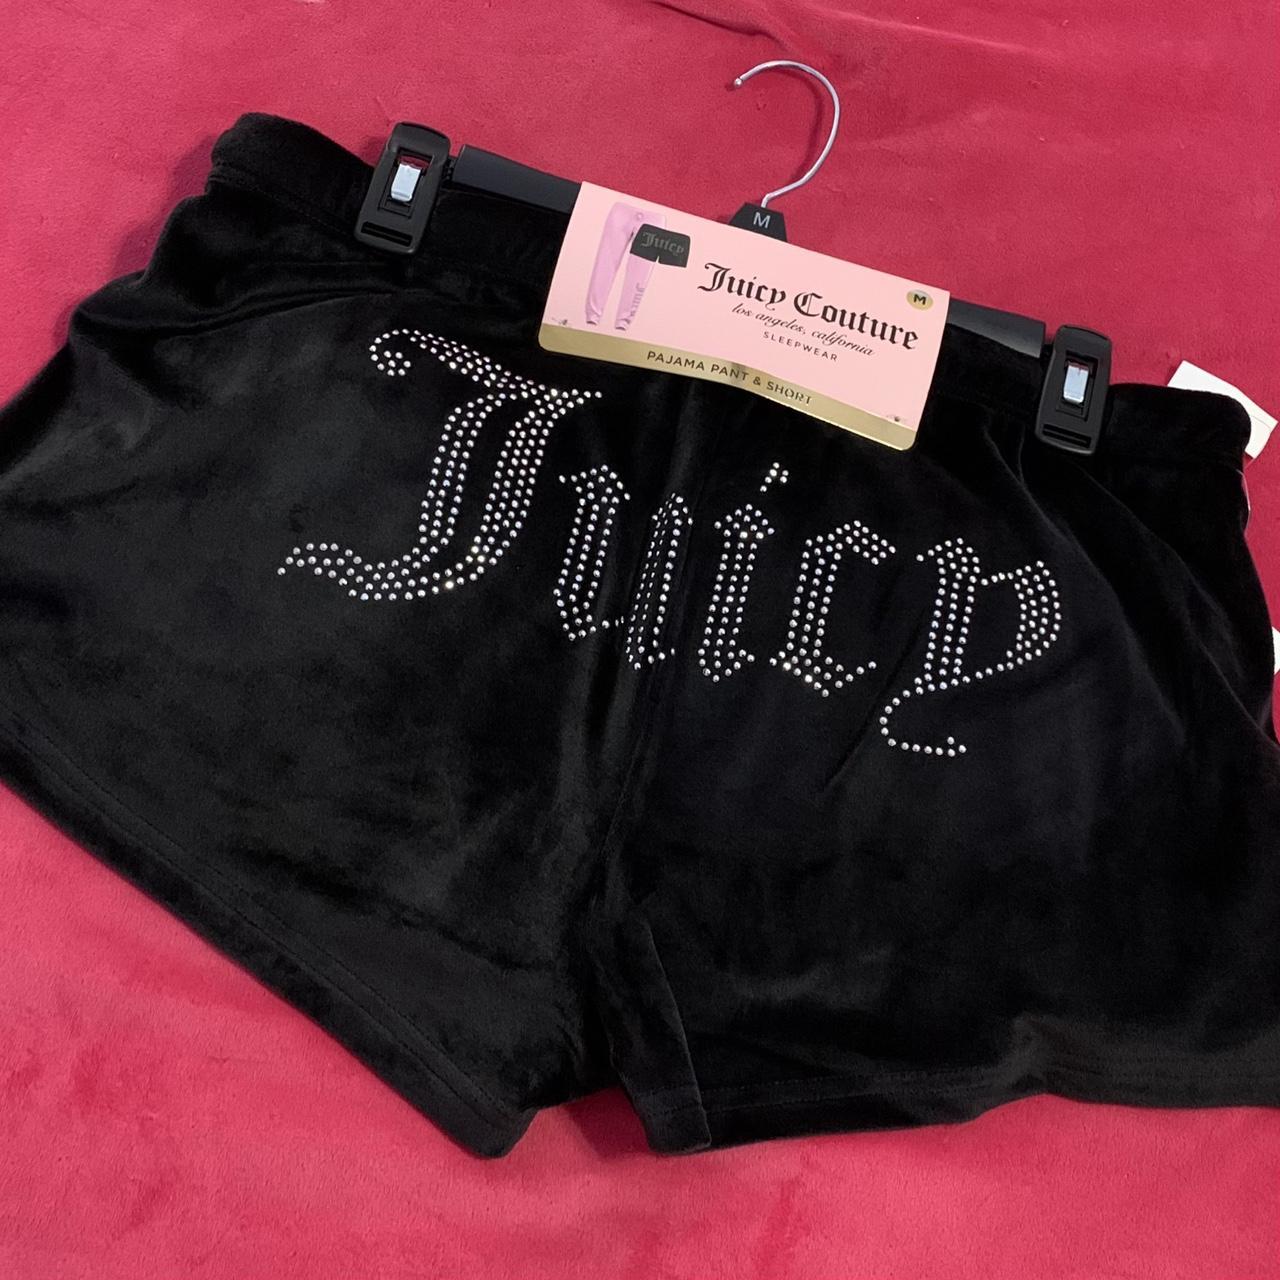 Juicy Couture velour shorts & pants set ! • Super... - Depop